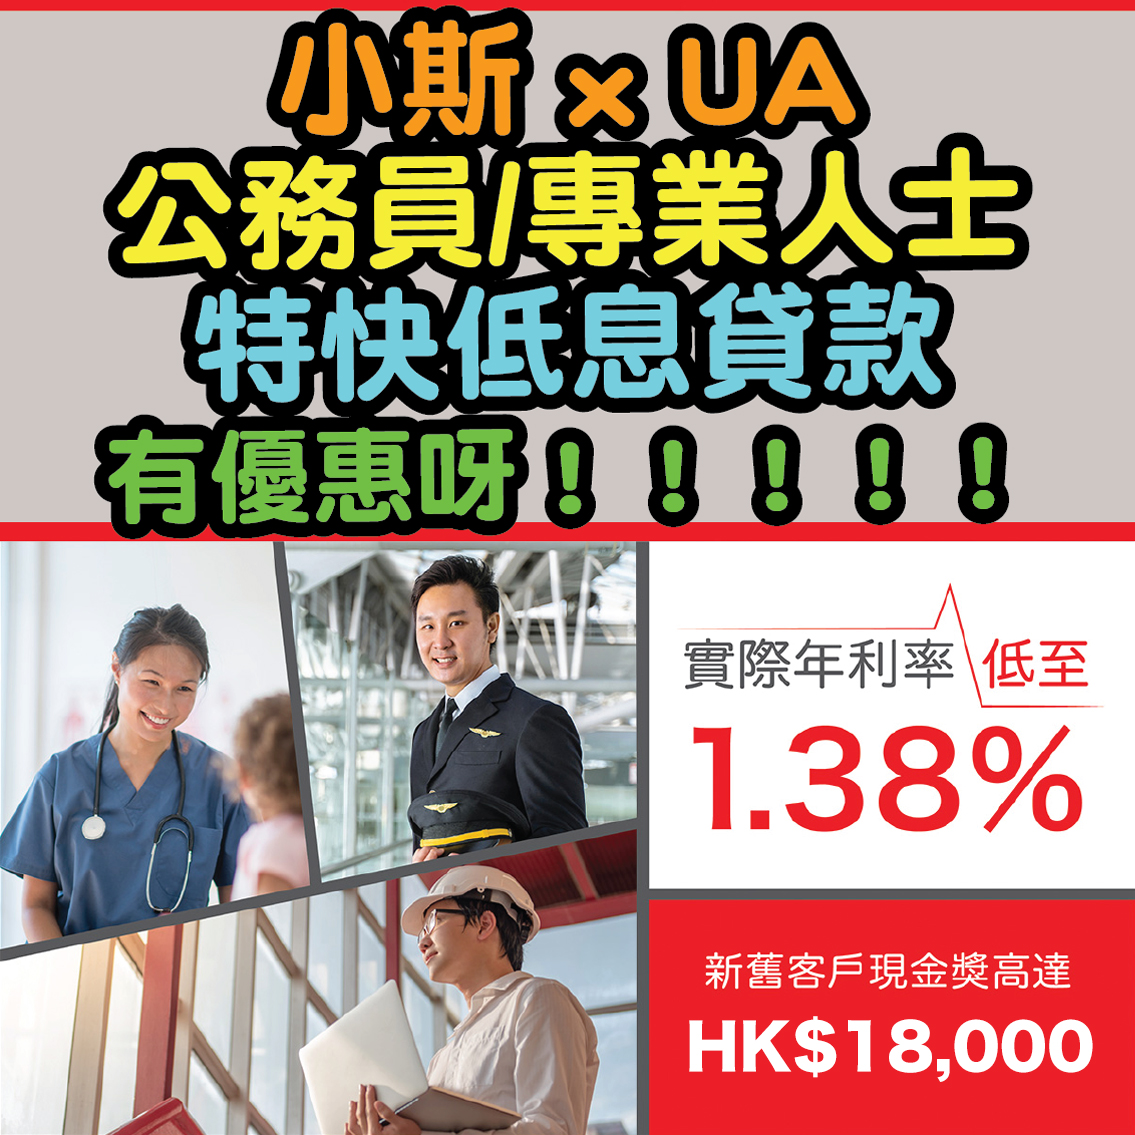 【小斯 x UA公務員/專業人士特快低息貸款優惠】現金獎高達HK$18,000*！實際年利率低至1.38%！隨時隨地網上申請現金即到手！